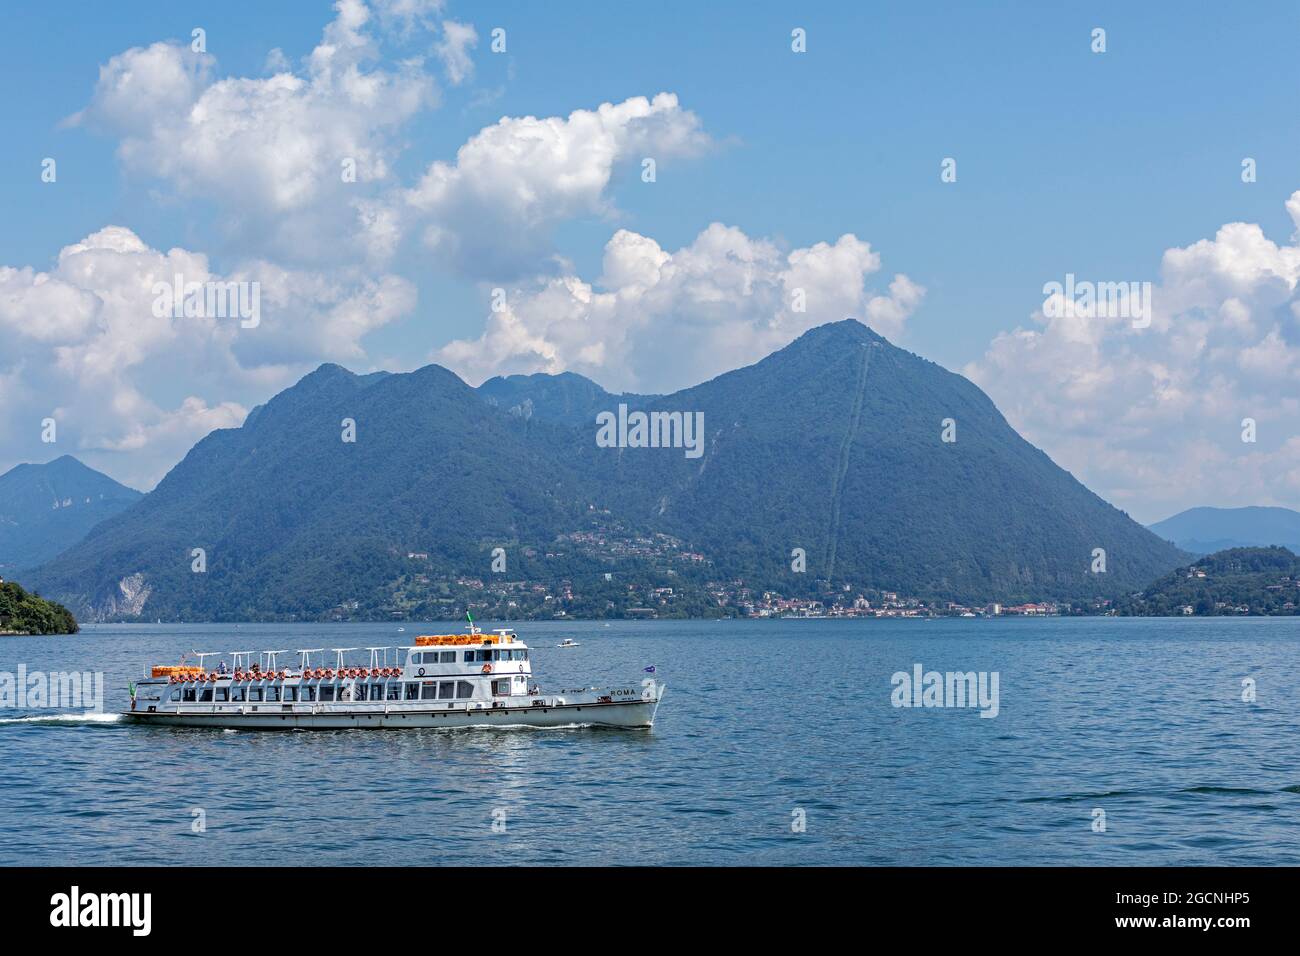 excursion boat passing Monte Sasso del Ferro, Lake Maggiore, Lombardy, Italy Stock Photo